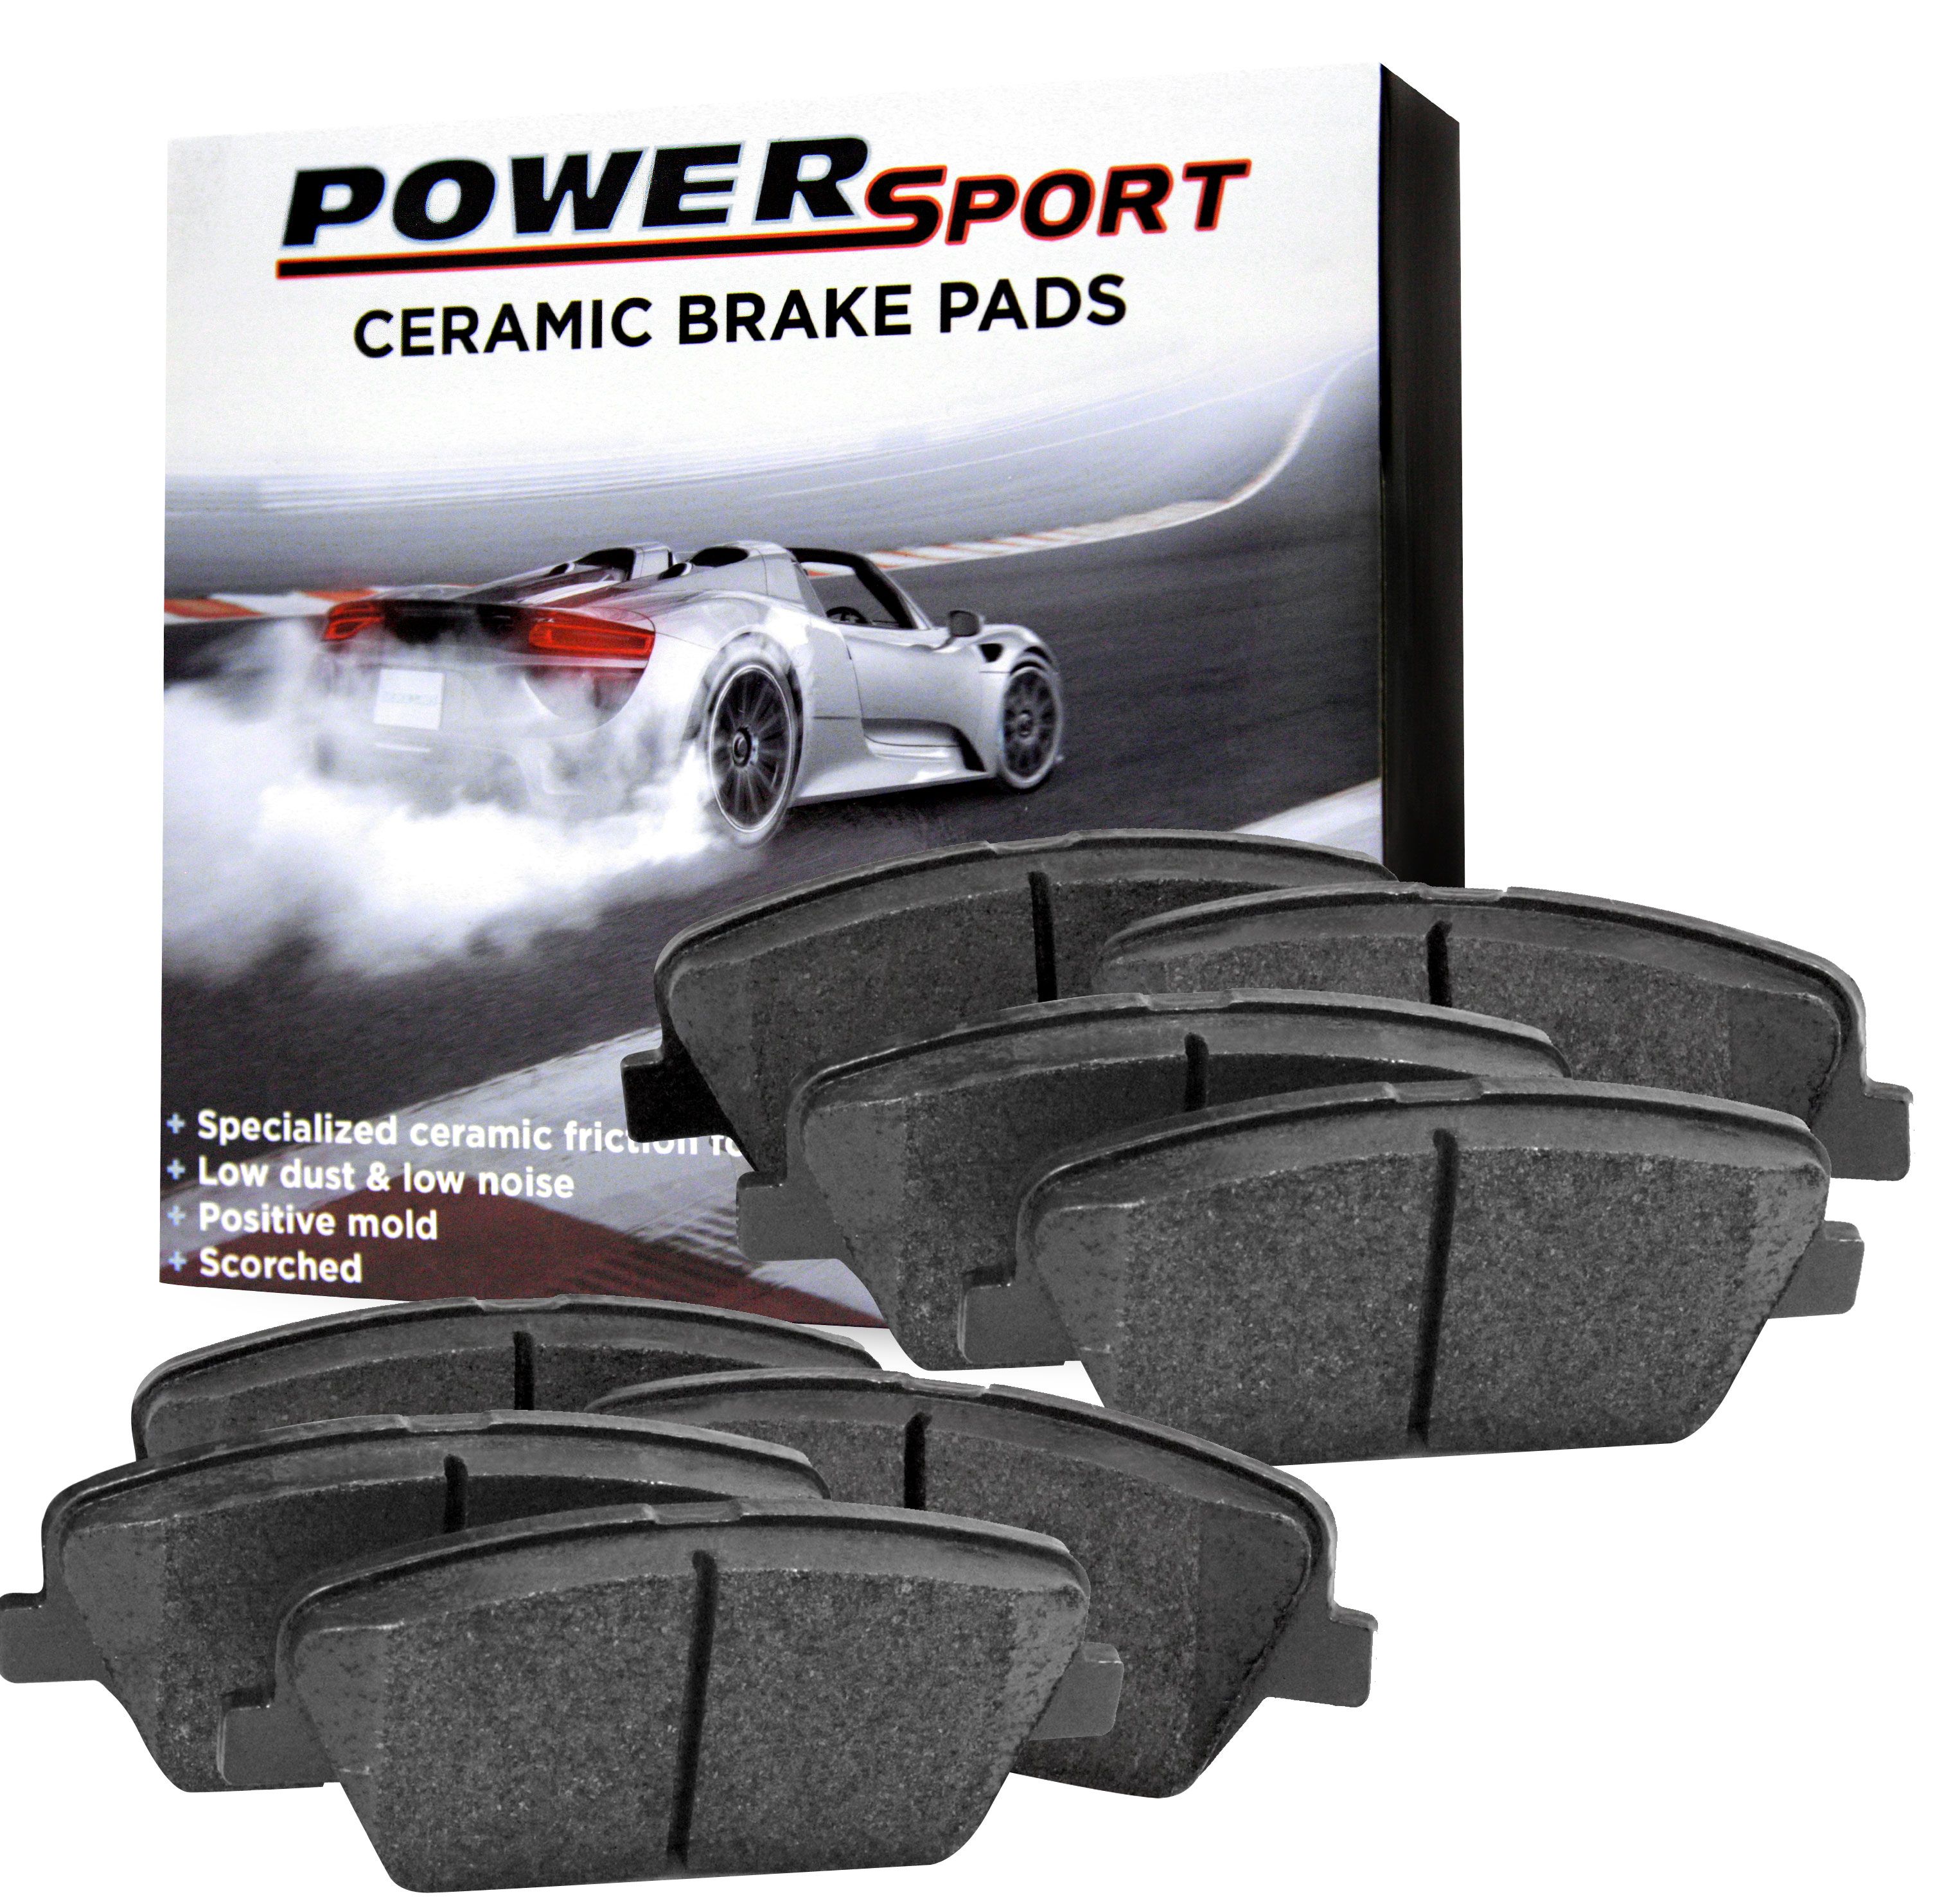 For Chrysler,Dodge 300,Challenger,Charger,Magnum Front Rear Ceramic Brake Pads